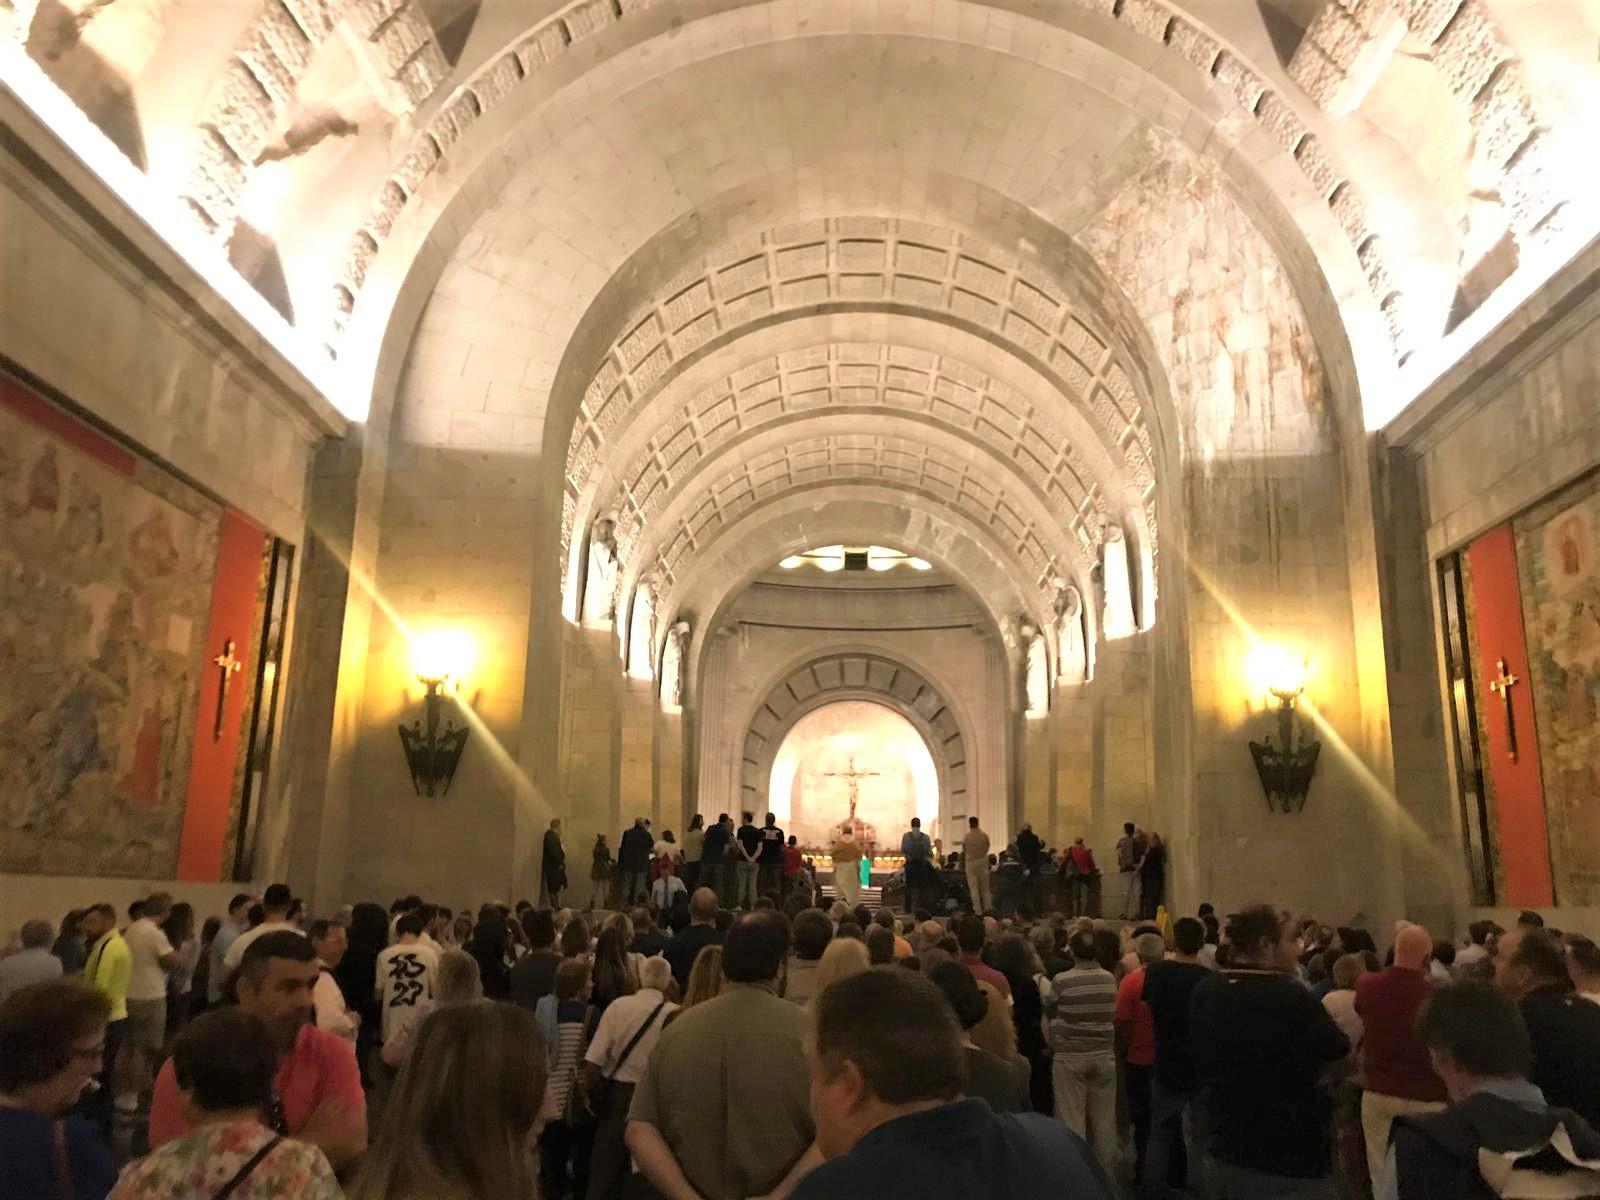 Misa por el "alma" de Francisco Franco en la Basílica de Santa Cruz del Valle de los Caídos. Irene Garrido